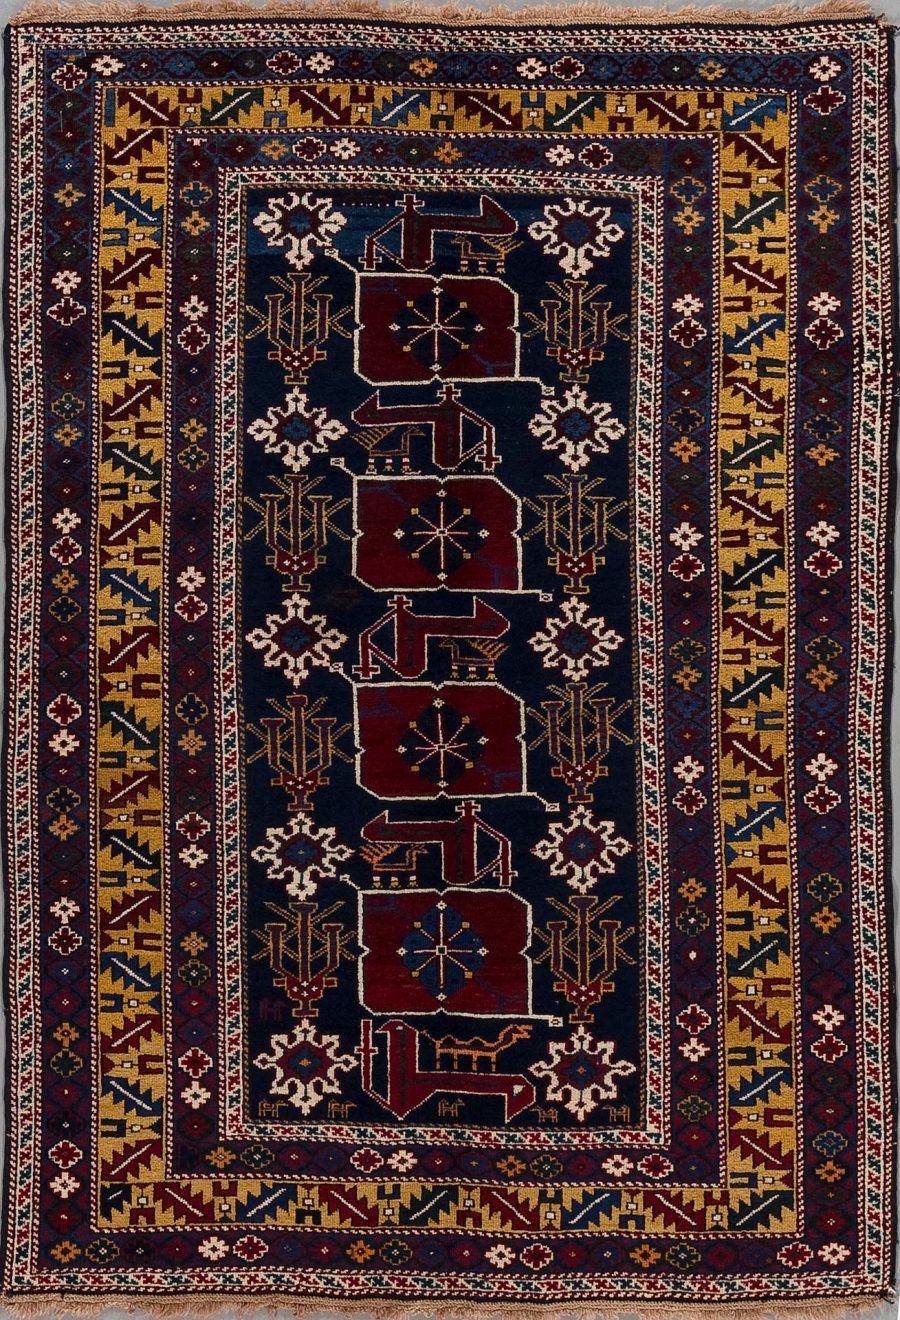 Detailliert gewebter orientalischer Teppich mit einem zentralen, dunkelblauen Feld und mehreren geometrischen, pflanzlichen und tierischen Motiven in Rot, Weiß, Blau und Goldtönen. Die Umrandung des Teppichs besteht aus mehreren schmalen Bordüren mit aufwändigen Mustern in ähnlichen Farbkombinationen.